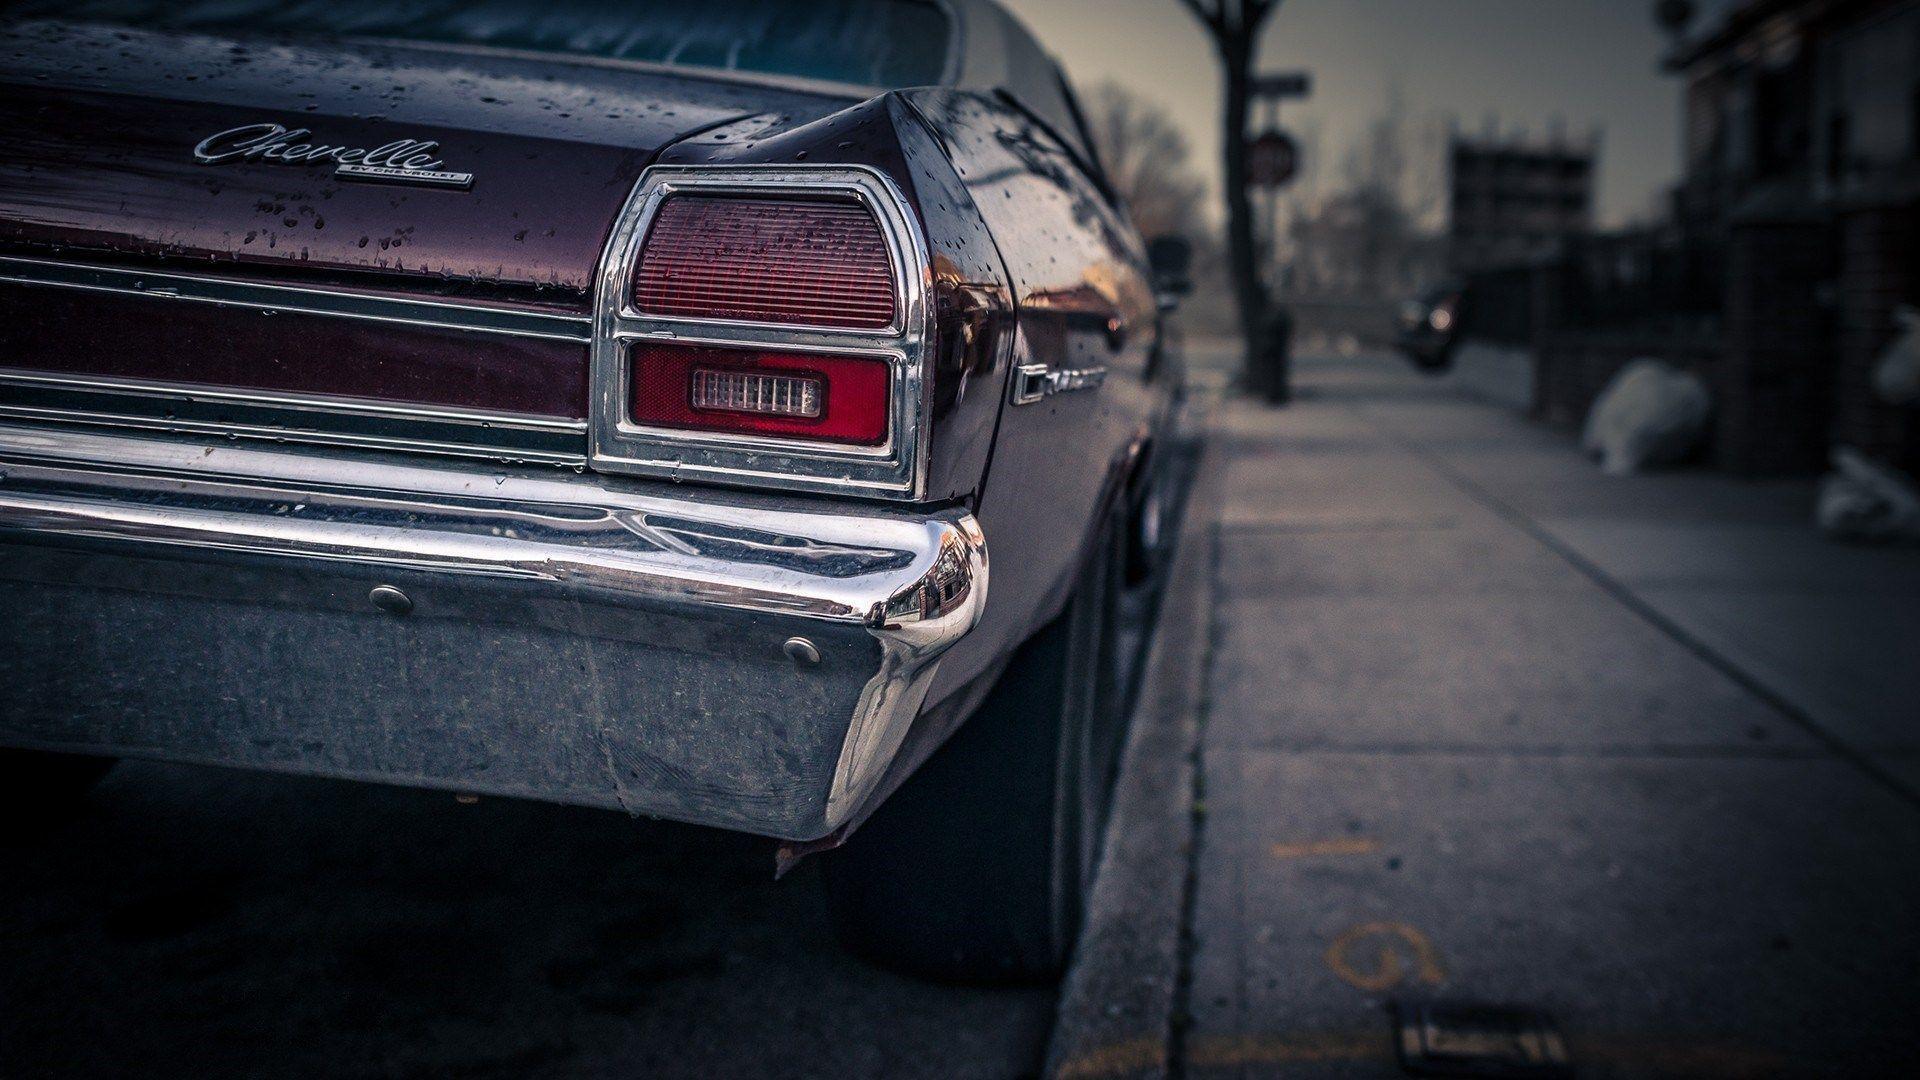 Chevrolet Chevelle Sunset City Sidewalk HD Wallpaper